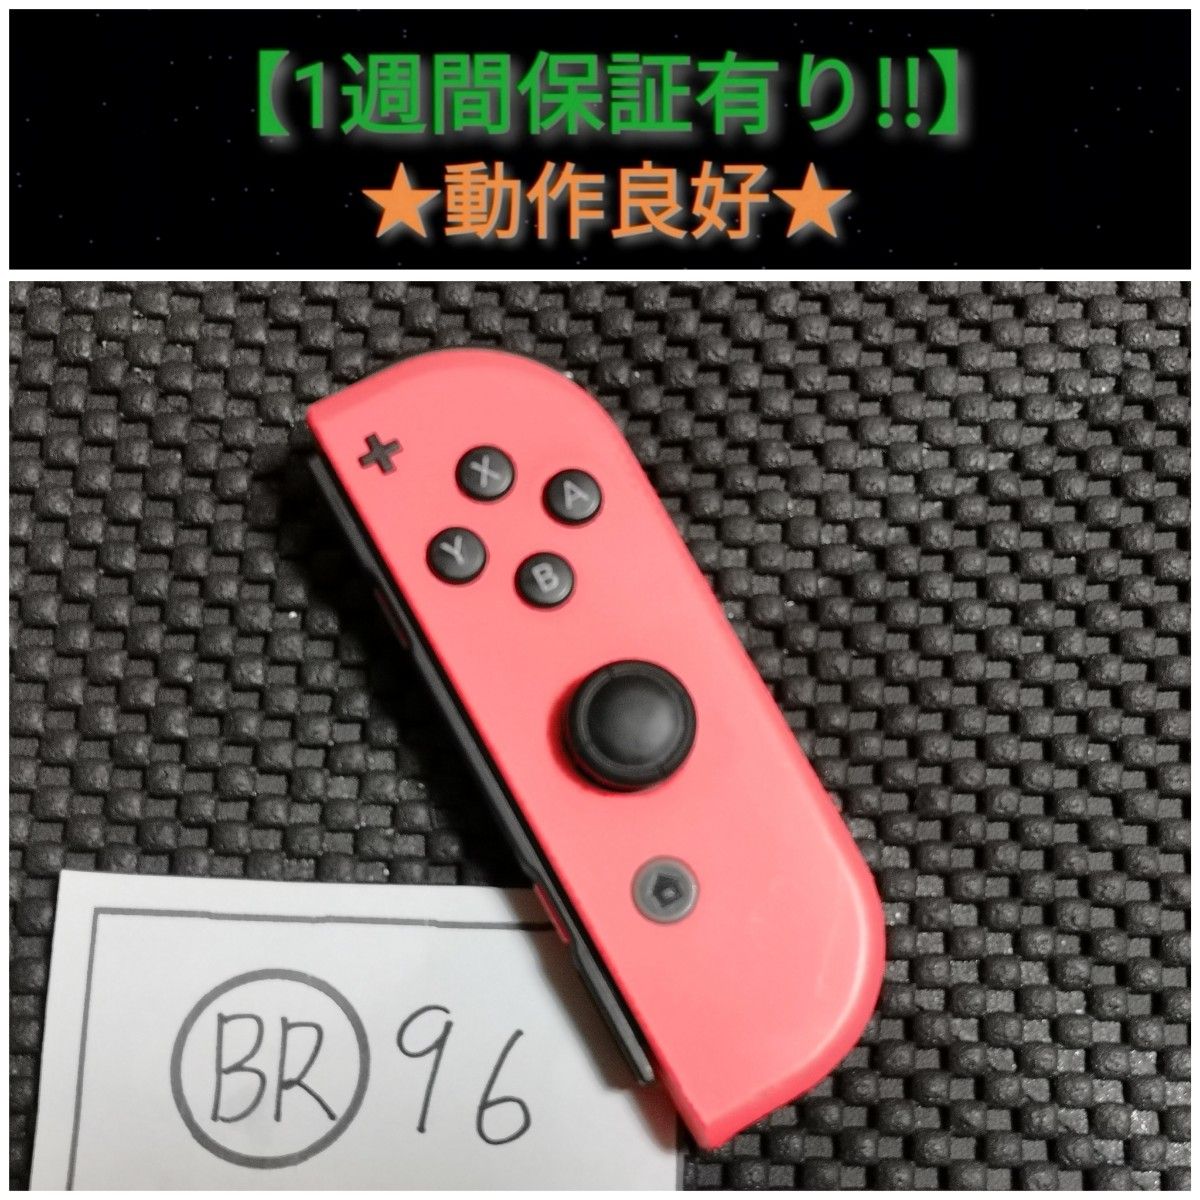 ジョイコン 右 (BR-96) A【1週間保証有り!!】 Nintendo Switch ネオンレッド